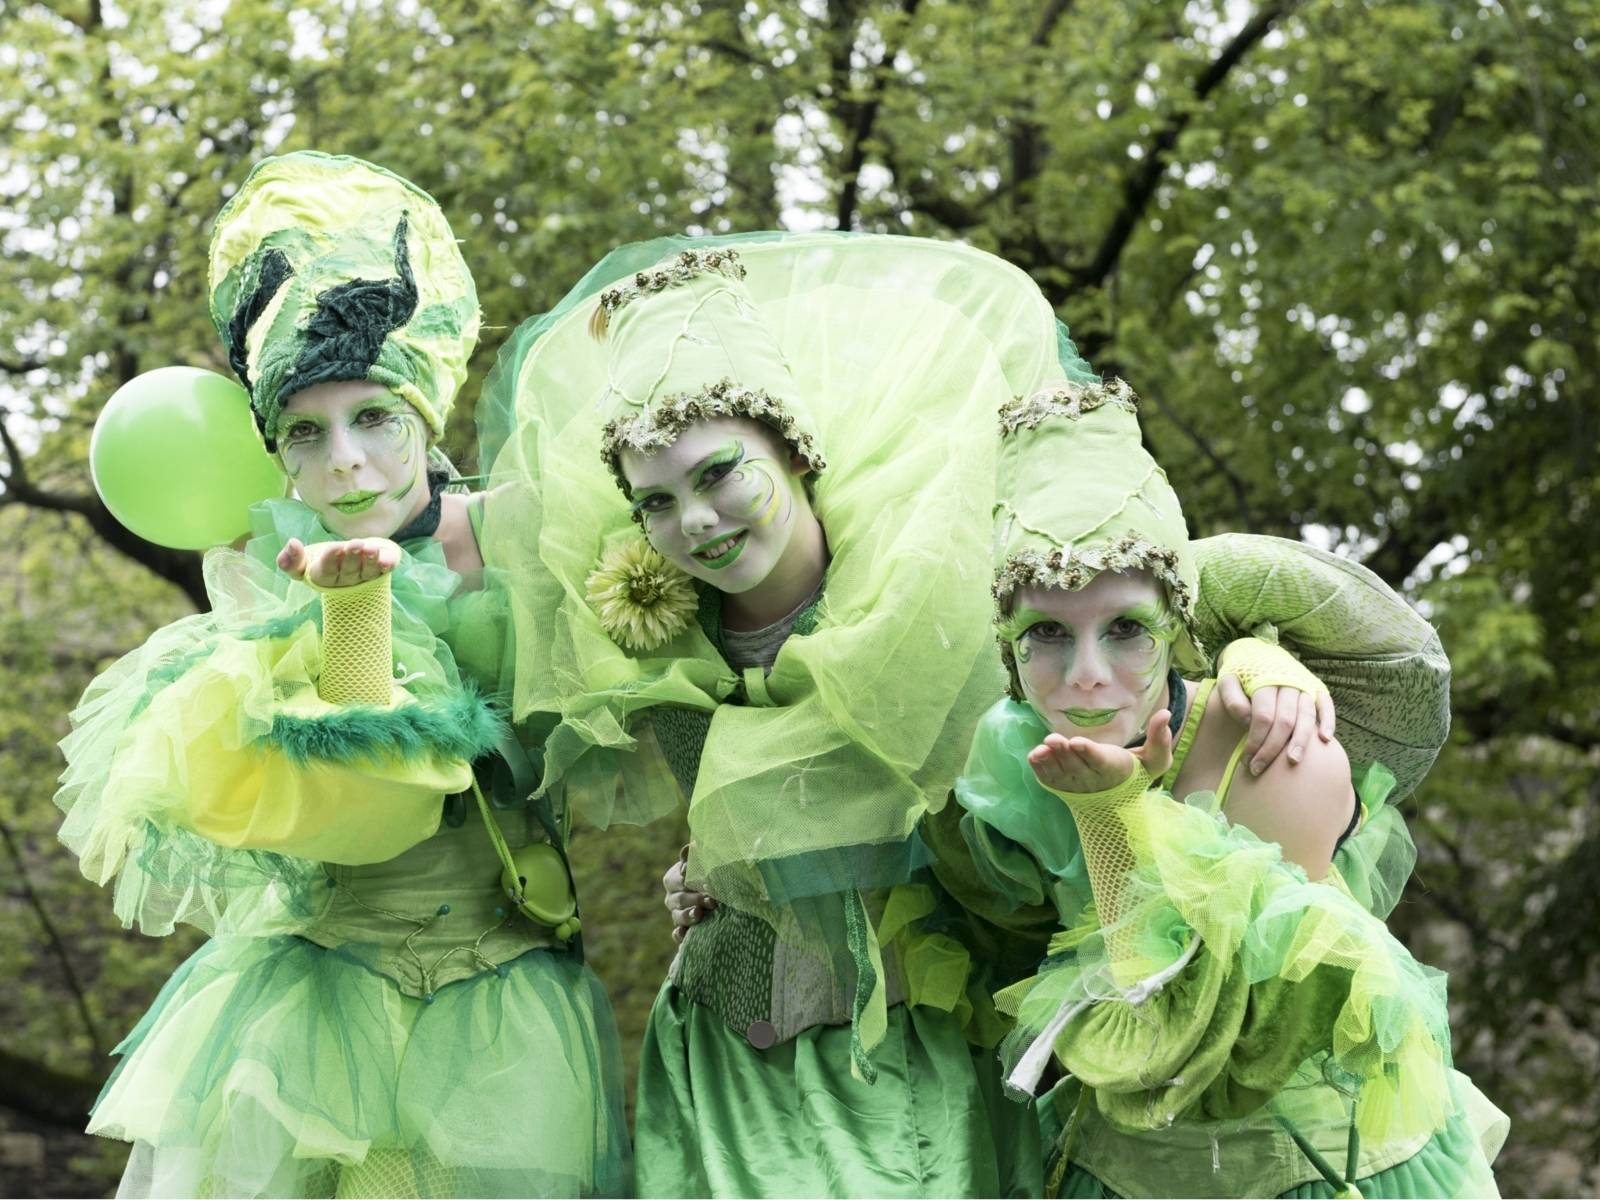 Drei grün gekleidete Fantasiefiguren (Walk-Acts) beim Autofreien Sonntag